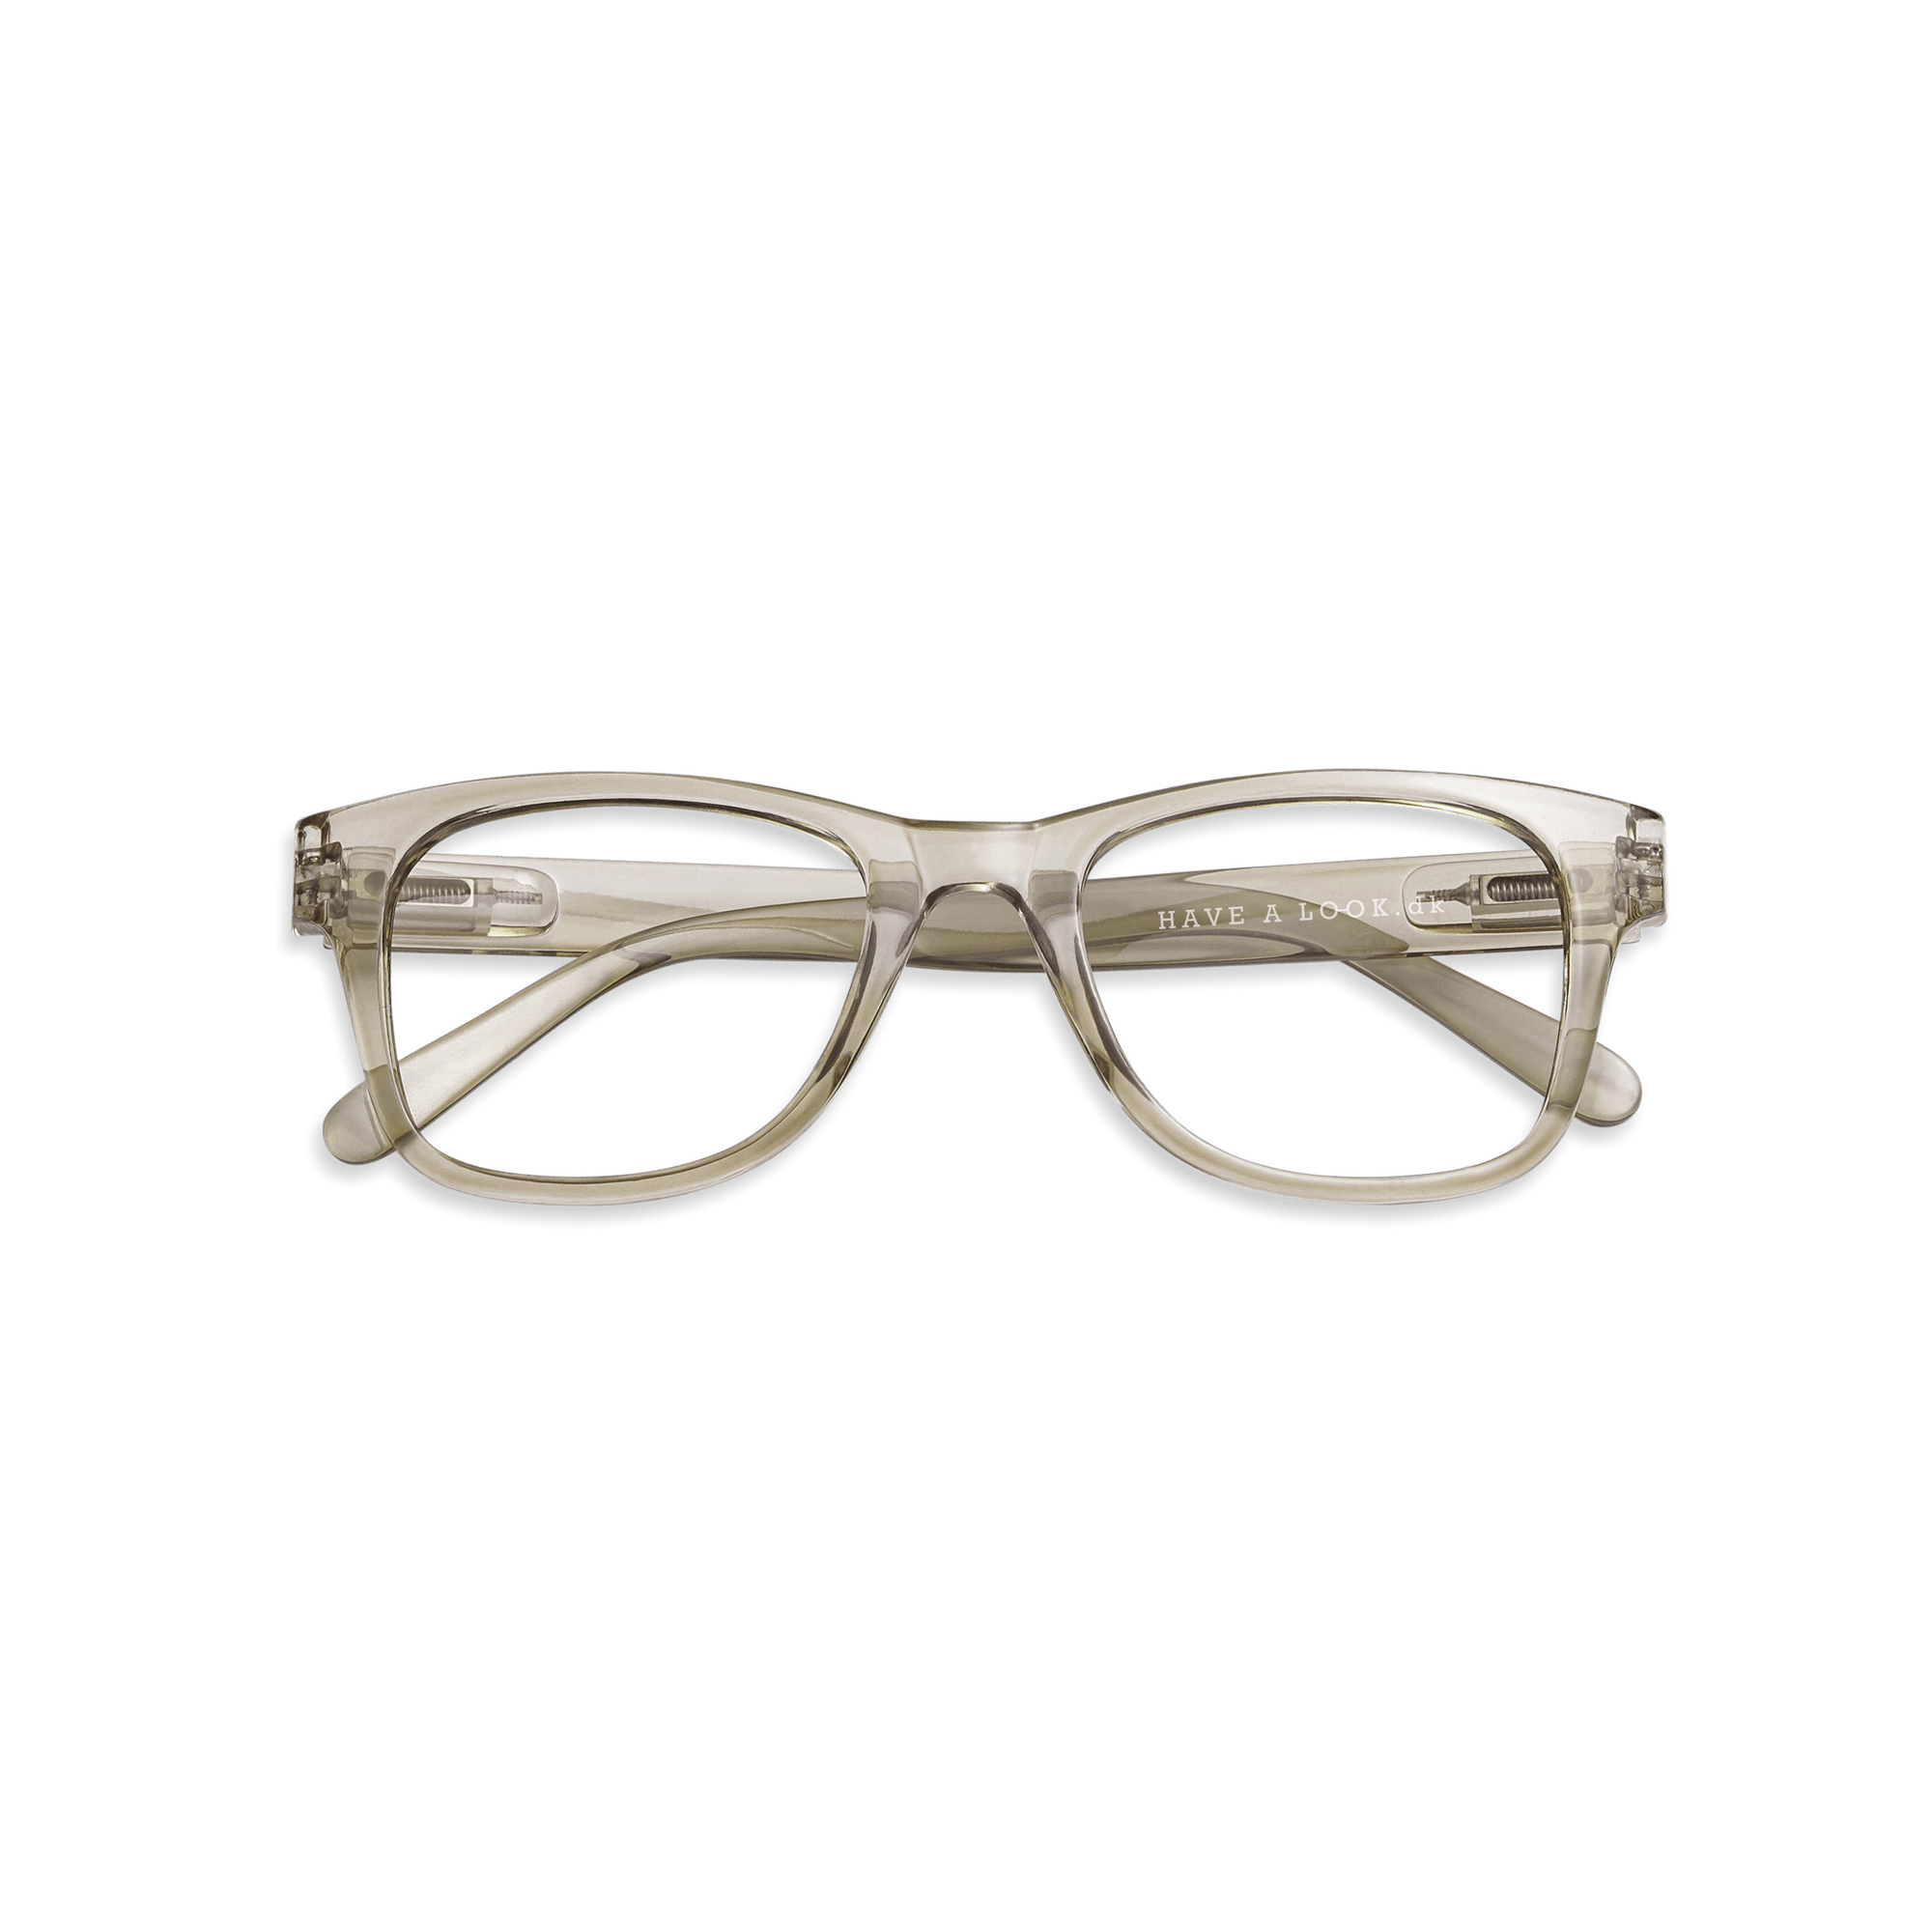 Minusglasögon Type B - olive